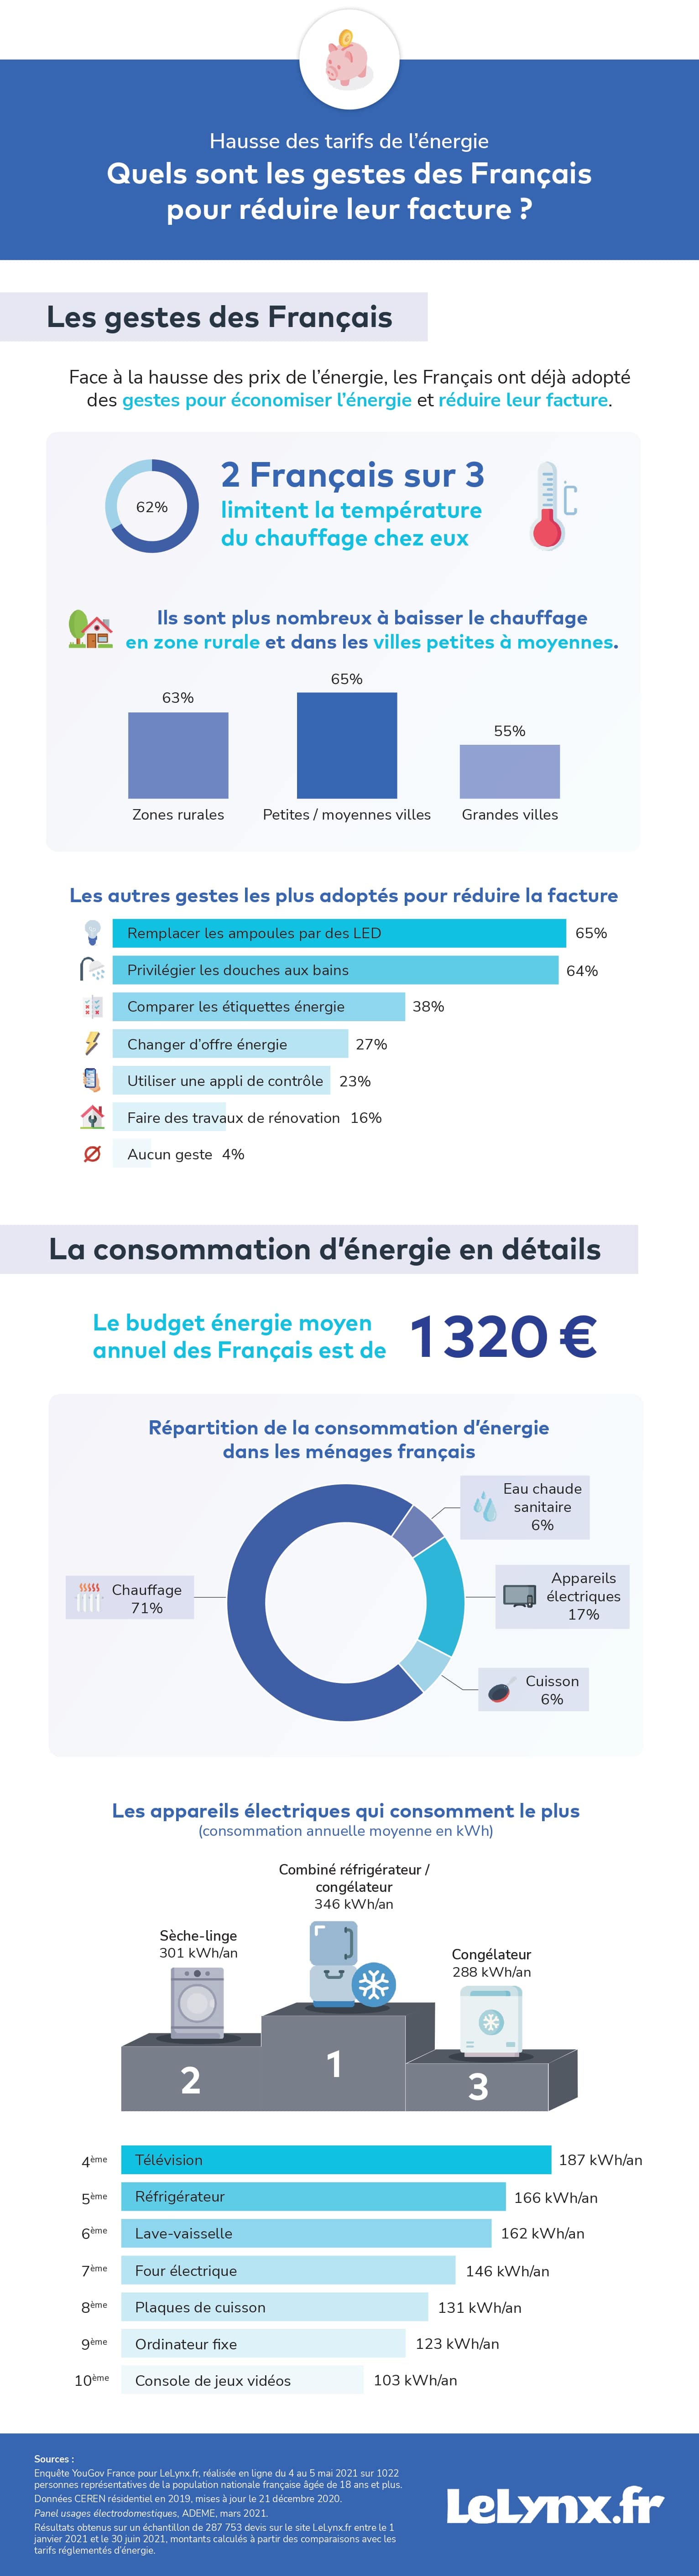 Gestes économiques des Français sur la facture d'électricité